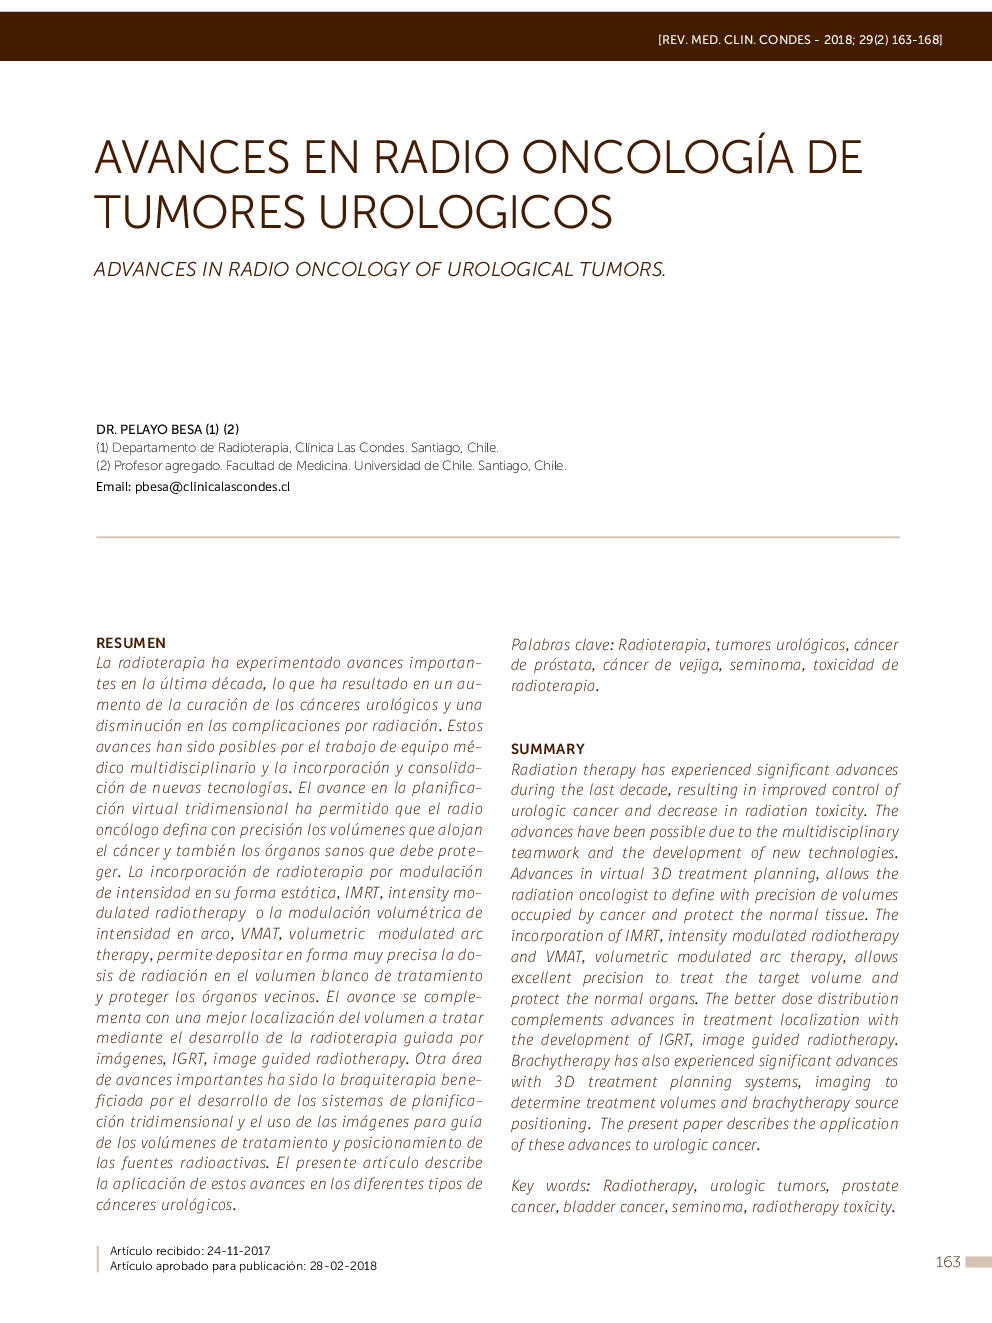 Avances en radio oncologÃ­a de tumores urologicos